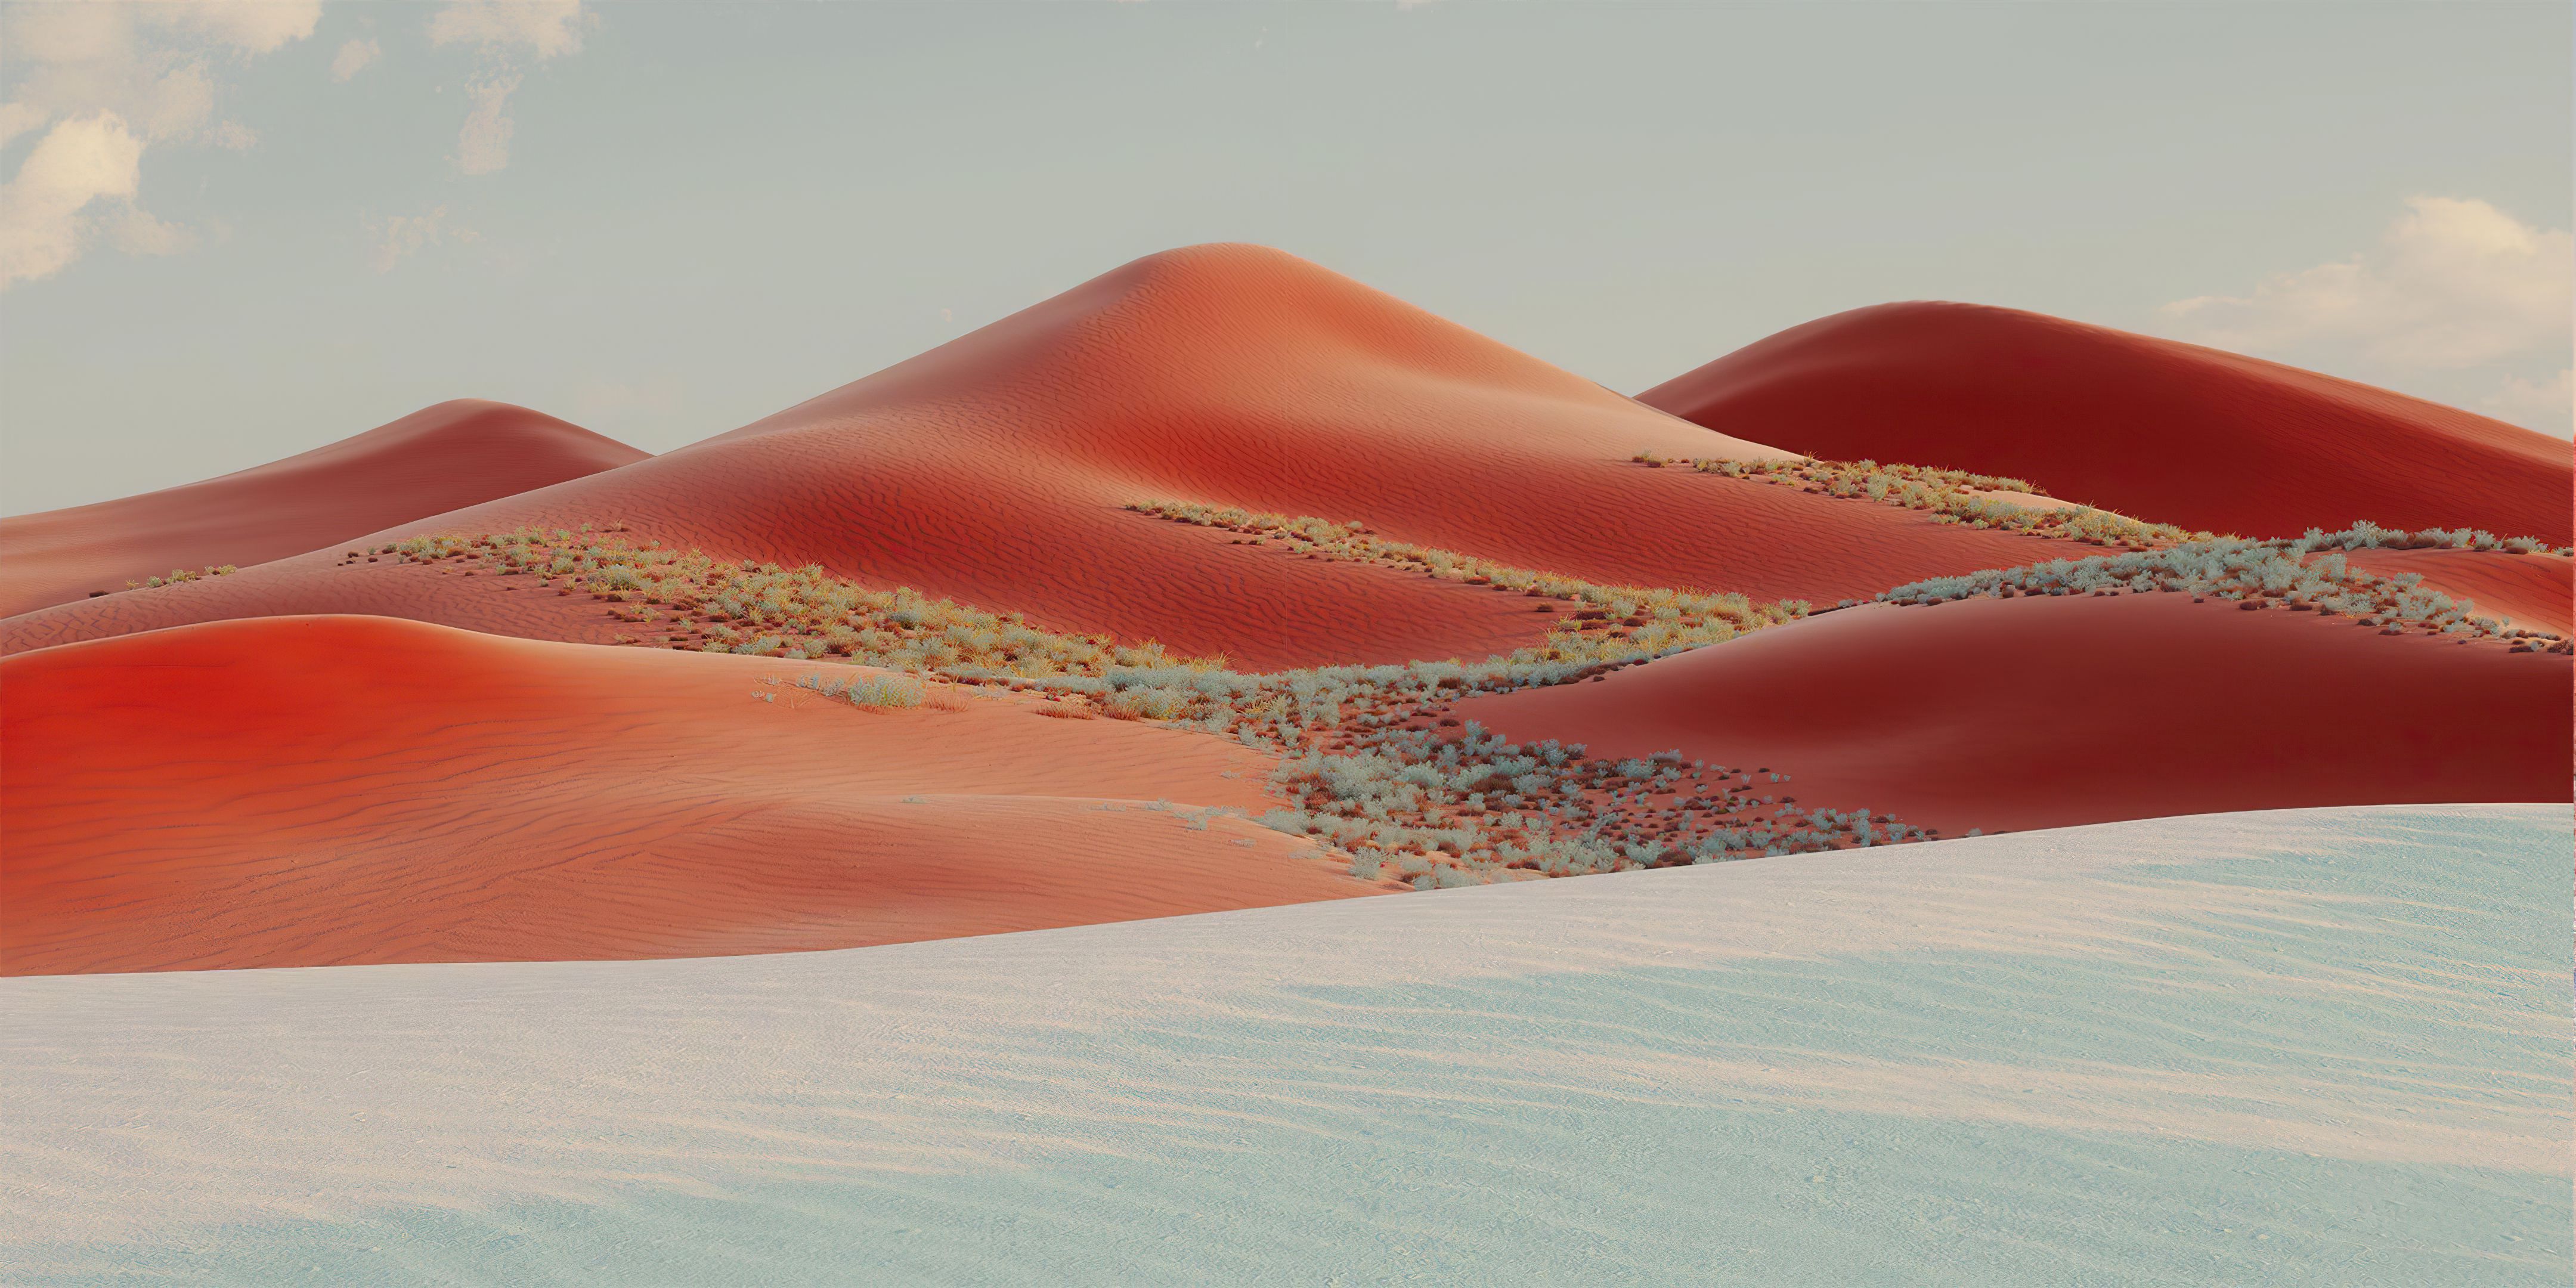 Sand Dunes Wallpaper 4K, Desert, Landscape, Nature